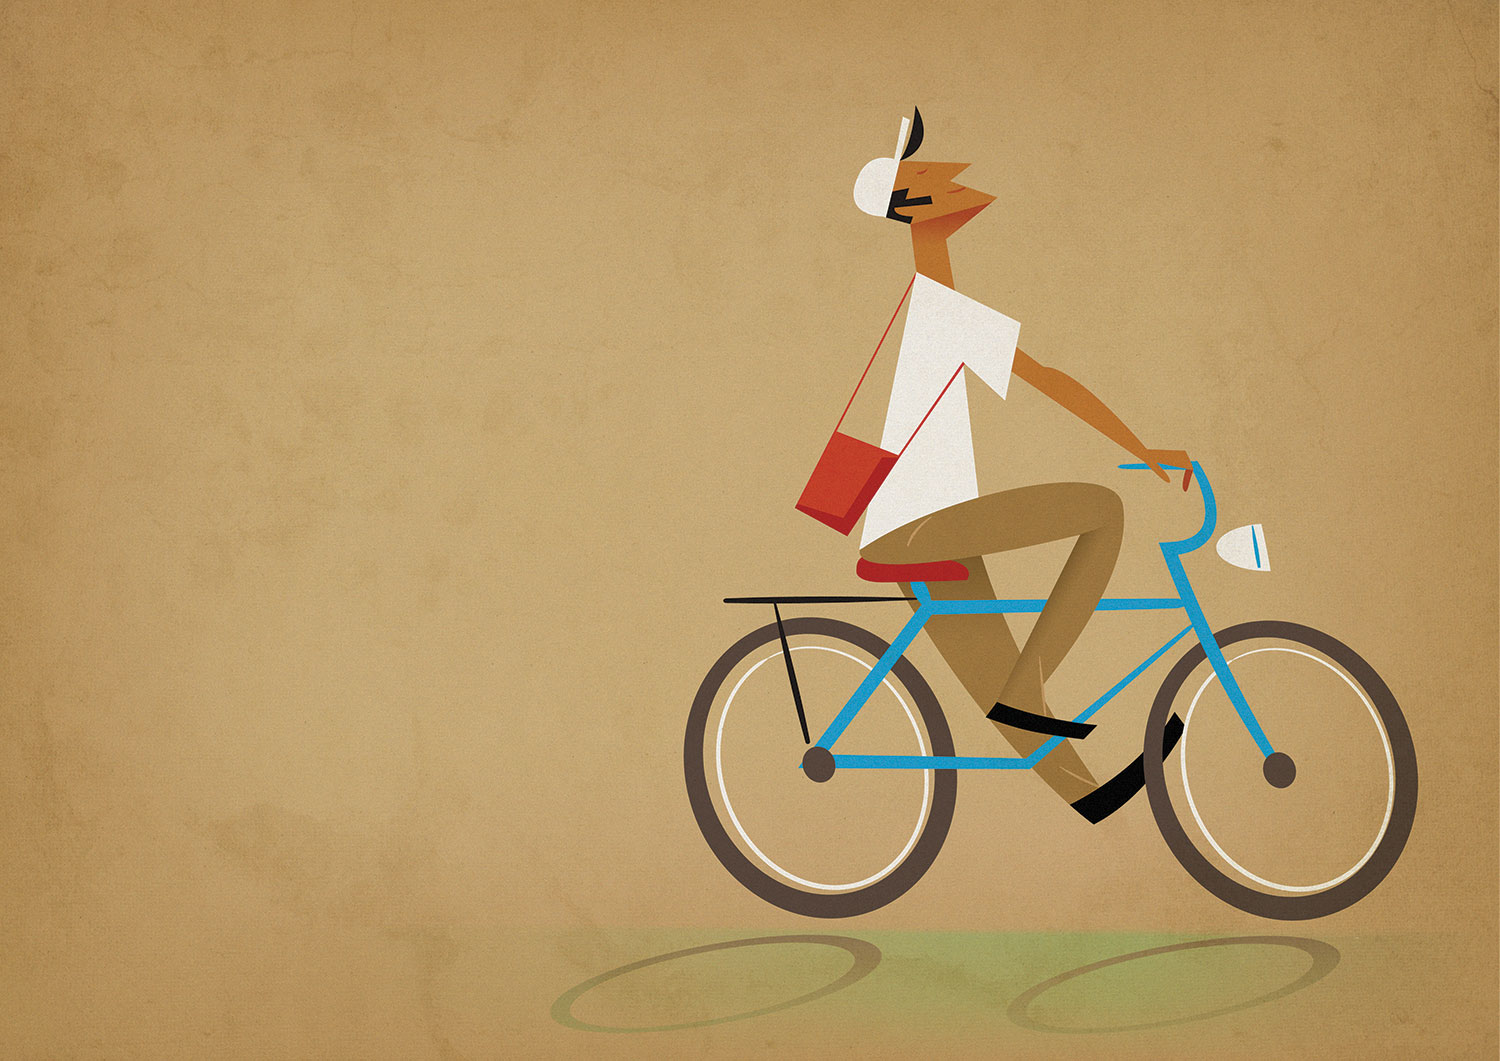 Bike-Riding-2015.jpg